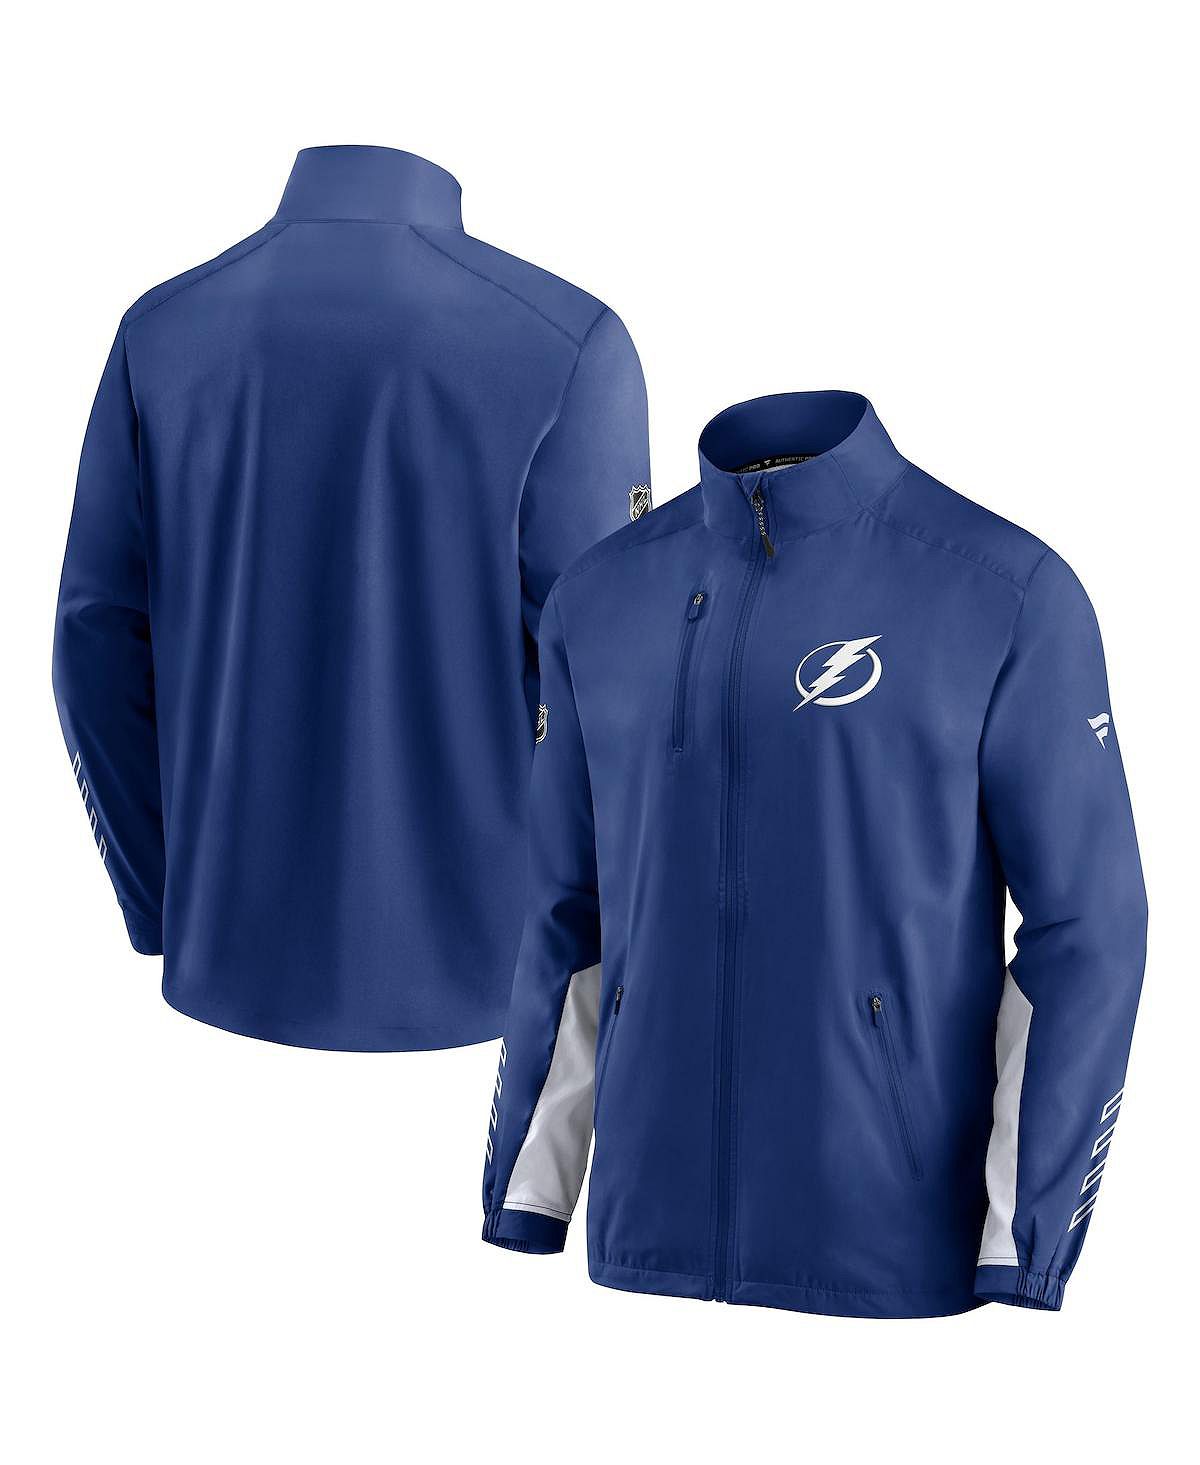 Мужская фирменная синяя куртка tampa bay lightning authentic pro locker room rinkside с полной молнией Fanatics, синий шапка tampa bay lightning син 55 58